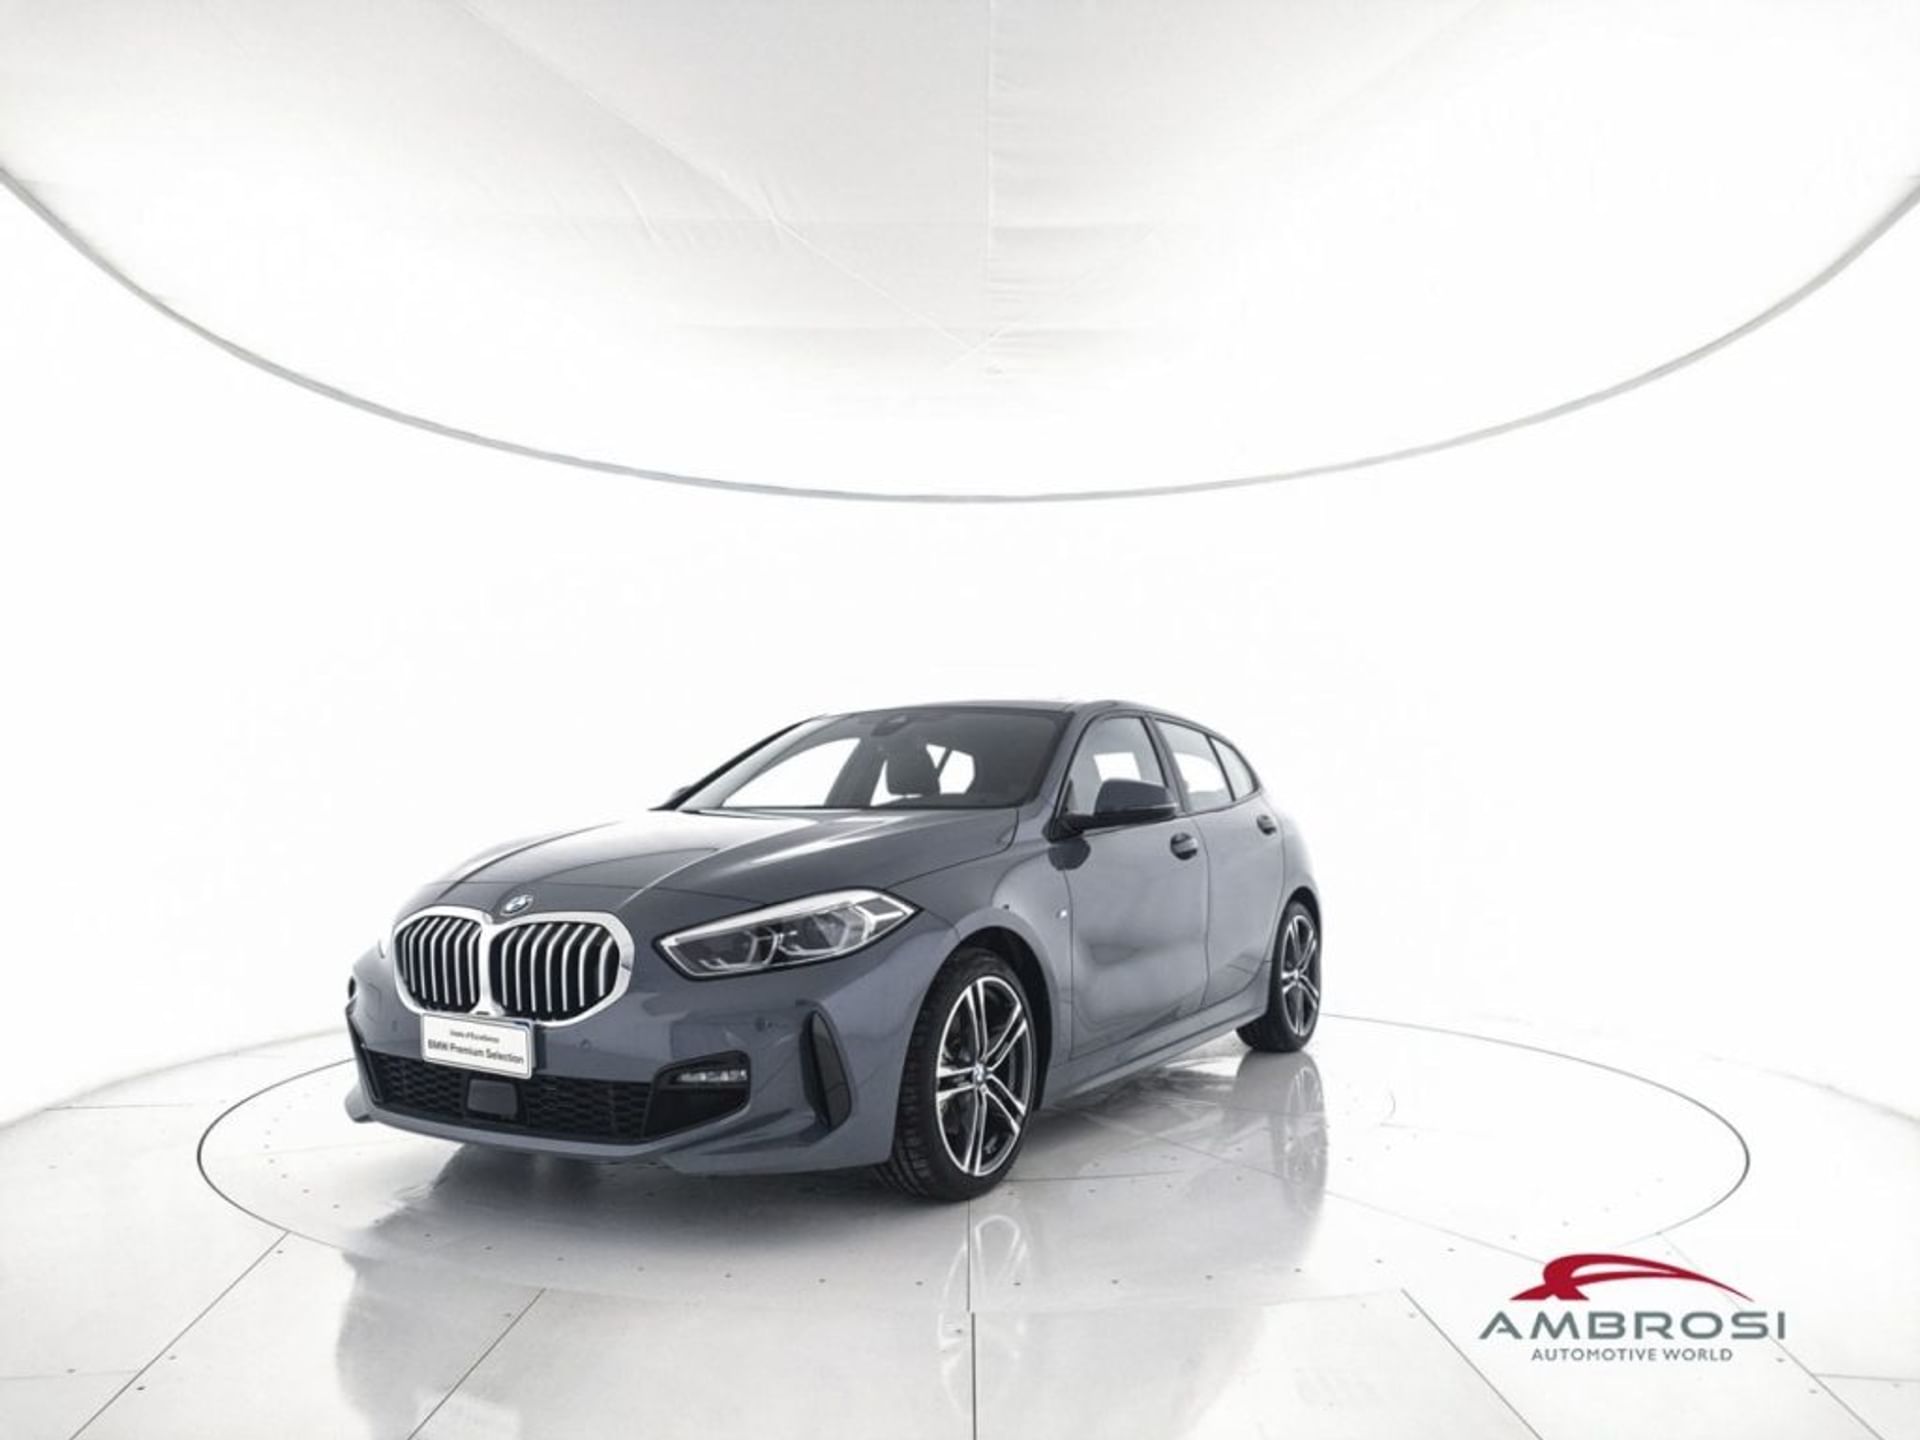 BMW M